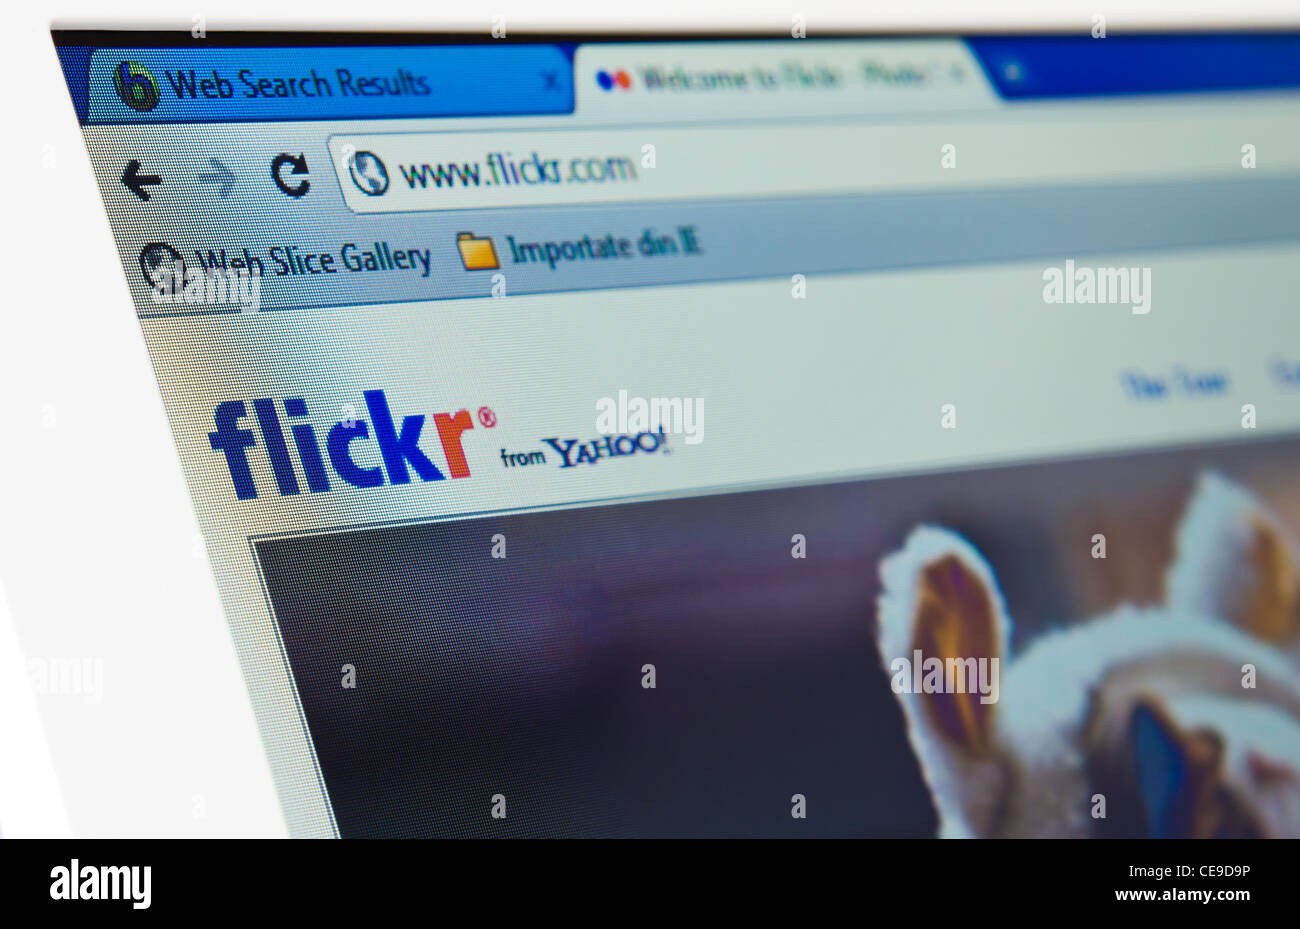 Flickr legt ab Kunden-Support auf höchstem Niveau. Yahoo Massenentlassungen bereits im Dezember 2010 angekündigt. Stockfoto